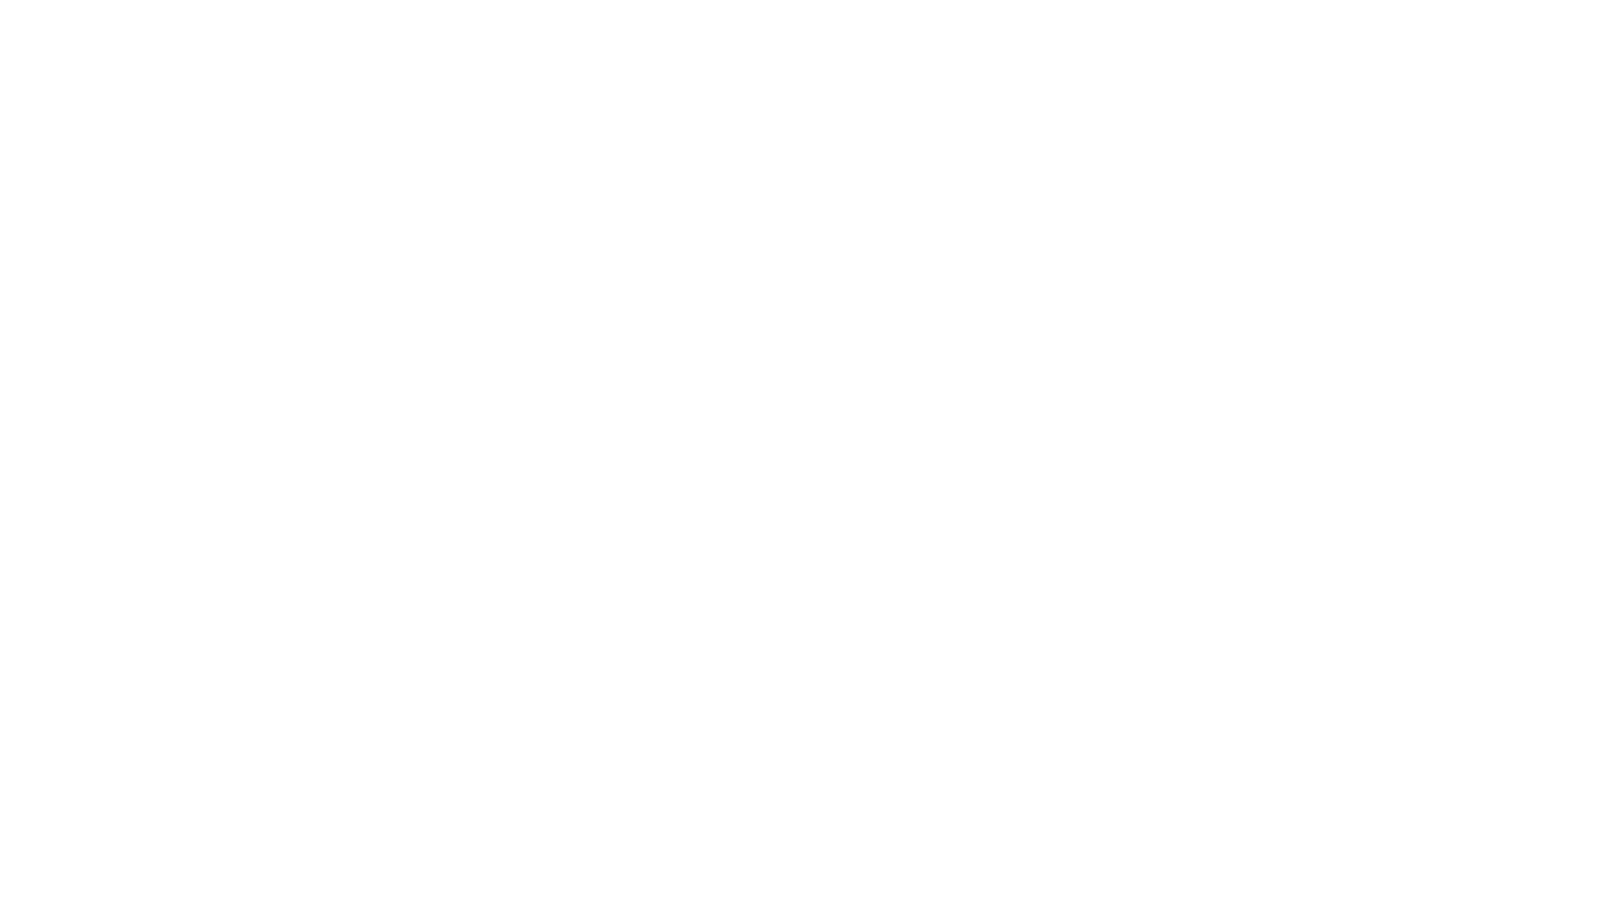 EVgo logo large for dark backgrounds (transparent PNG)